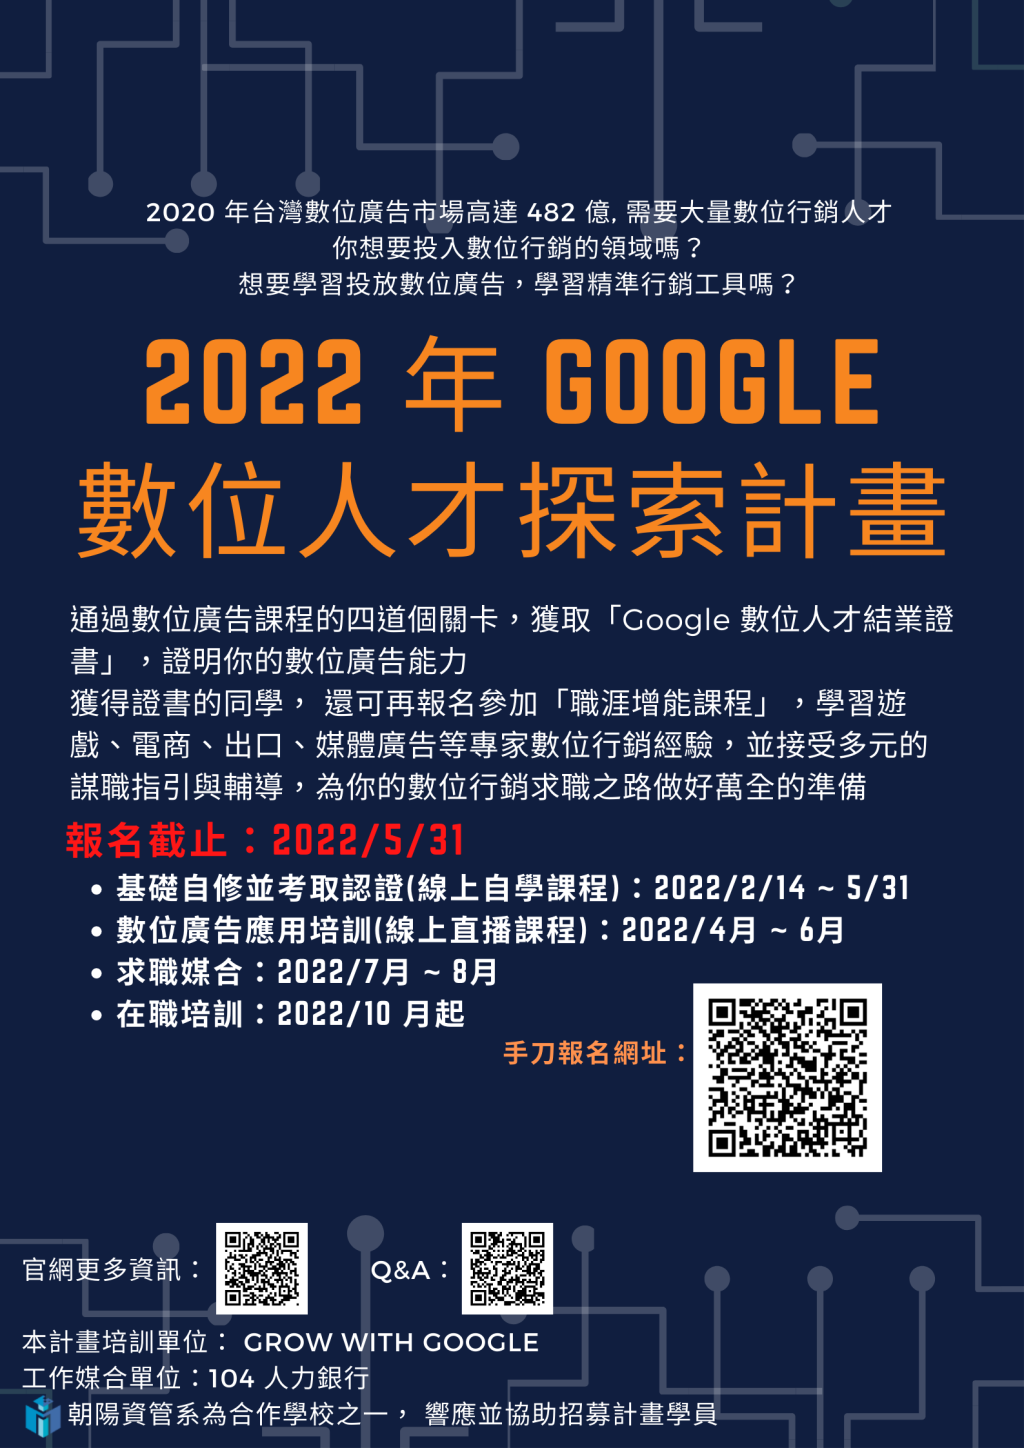 【活動資訊】2022 年 Google 數位人才探索計畫 強力招募